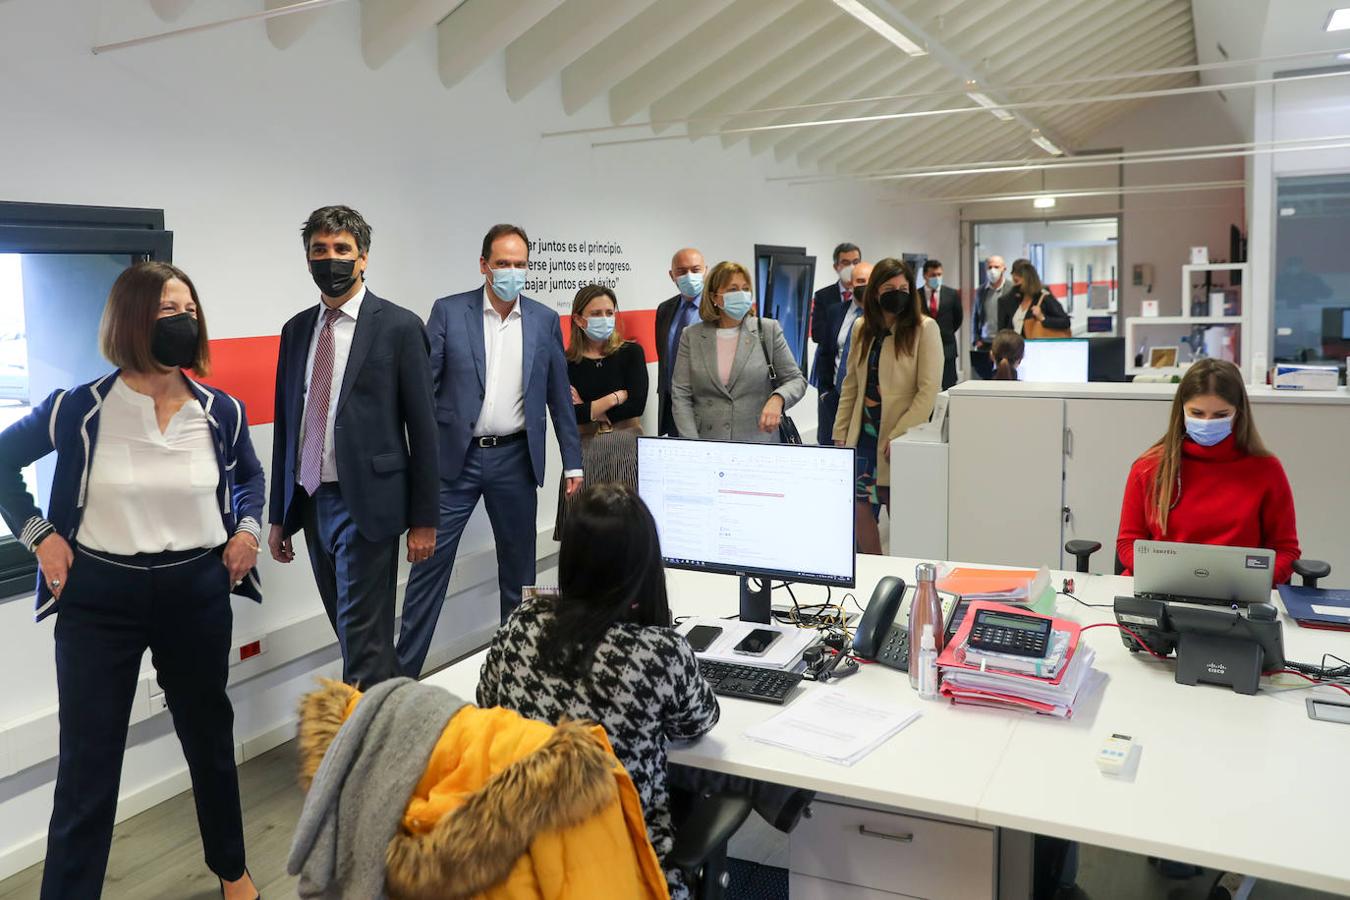 El secretario de Estado de Economía y Apoyo a la Empresa, Gonzalo García visitó este viernes las instalaciones de Izertis, donde se reunió también con representantes del proyecto Field Digital Lab de FADE.